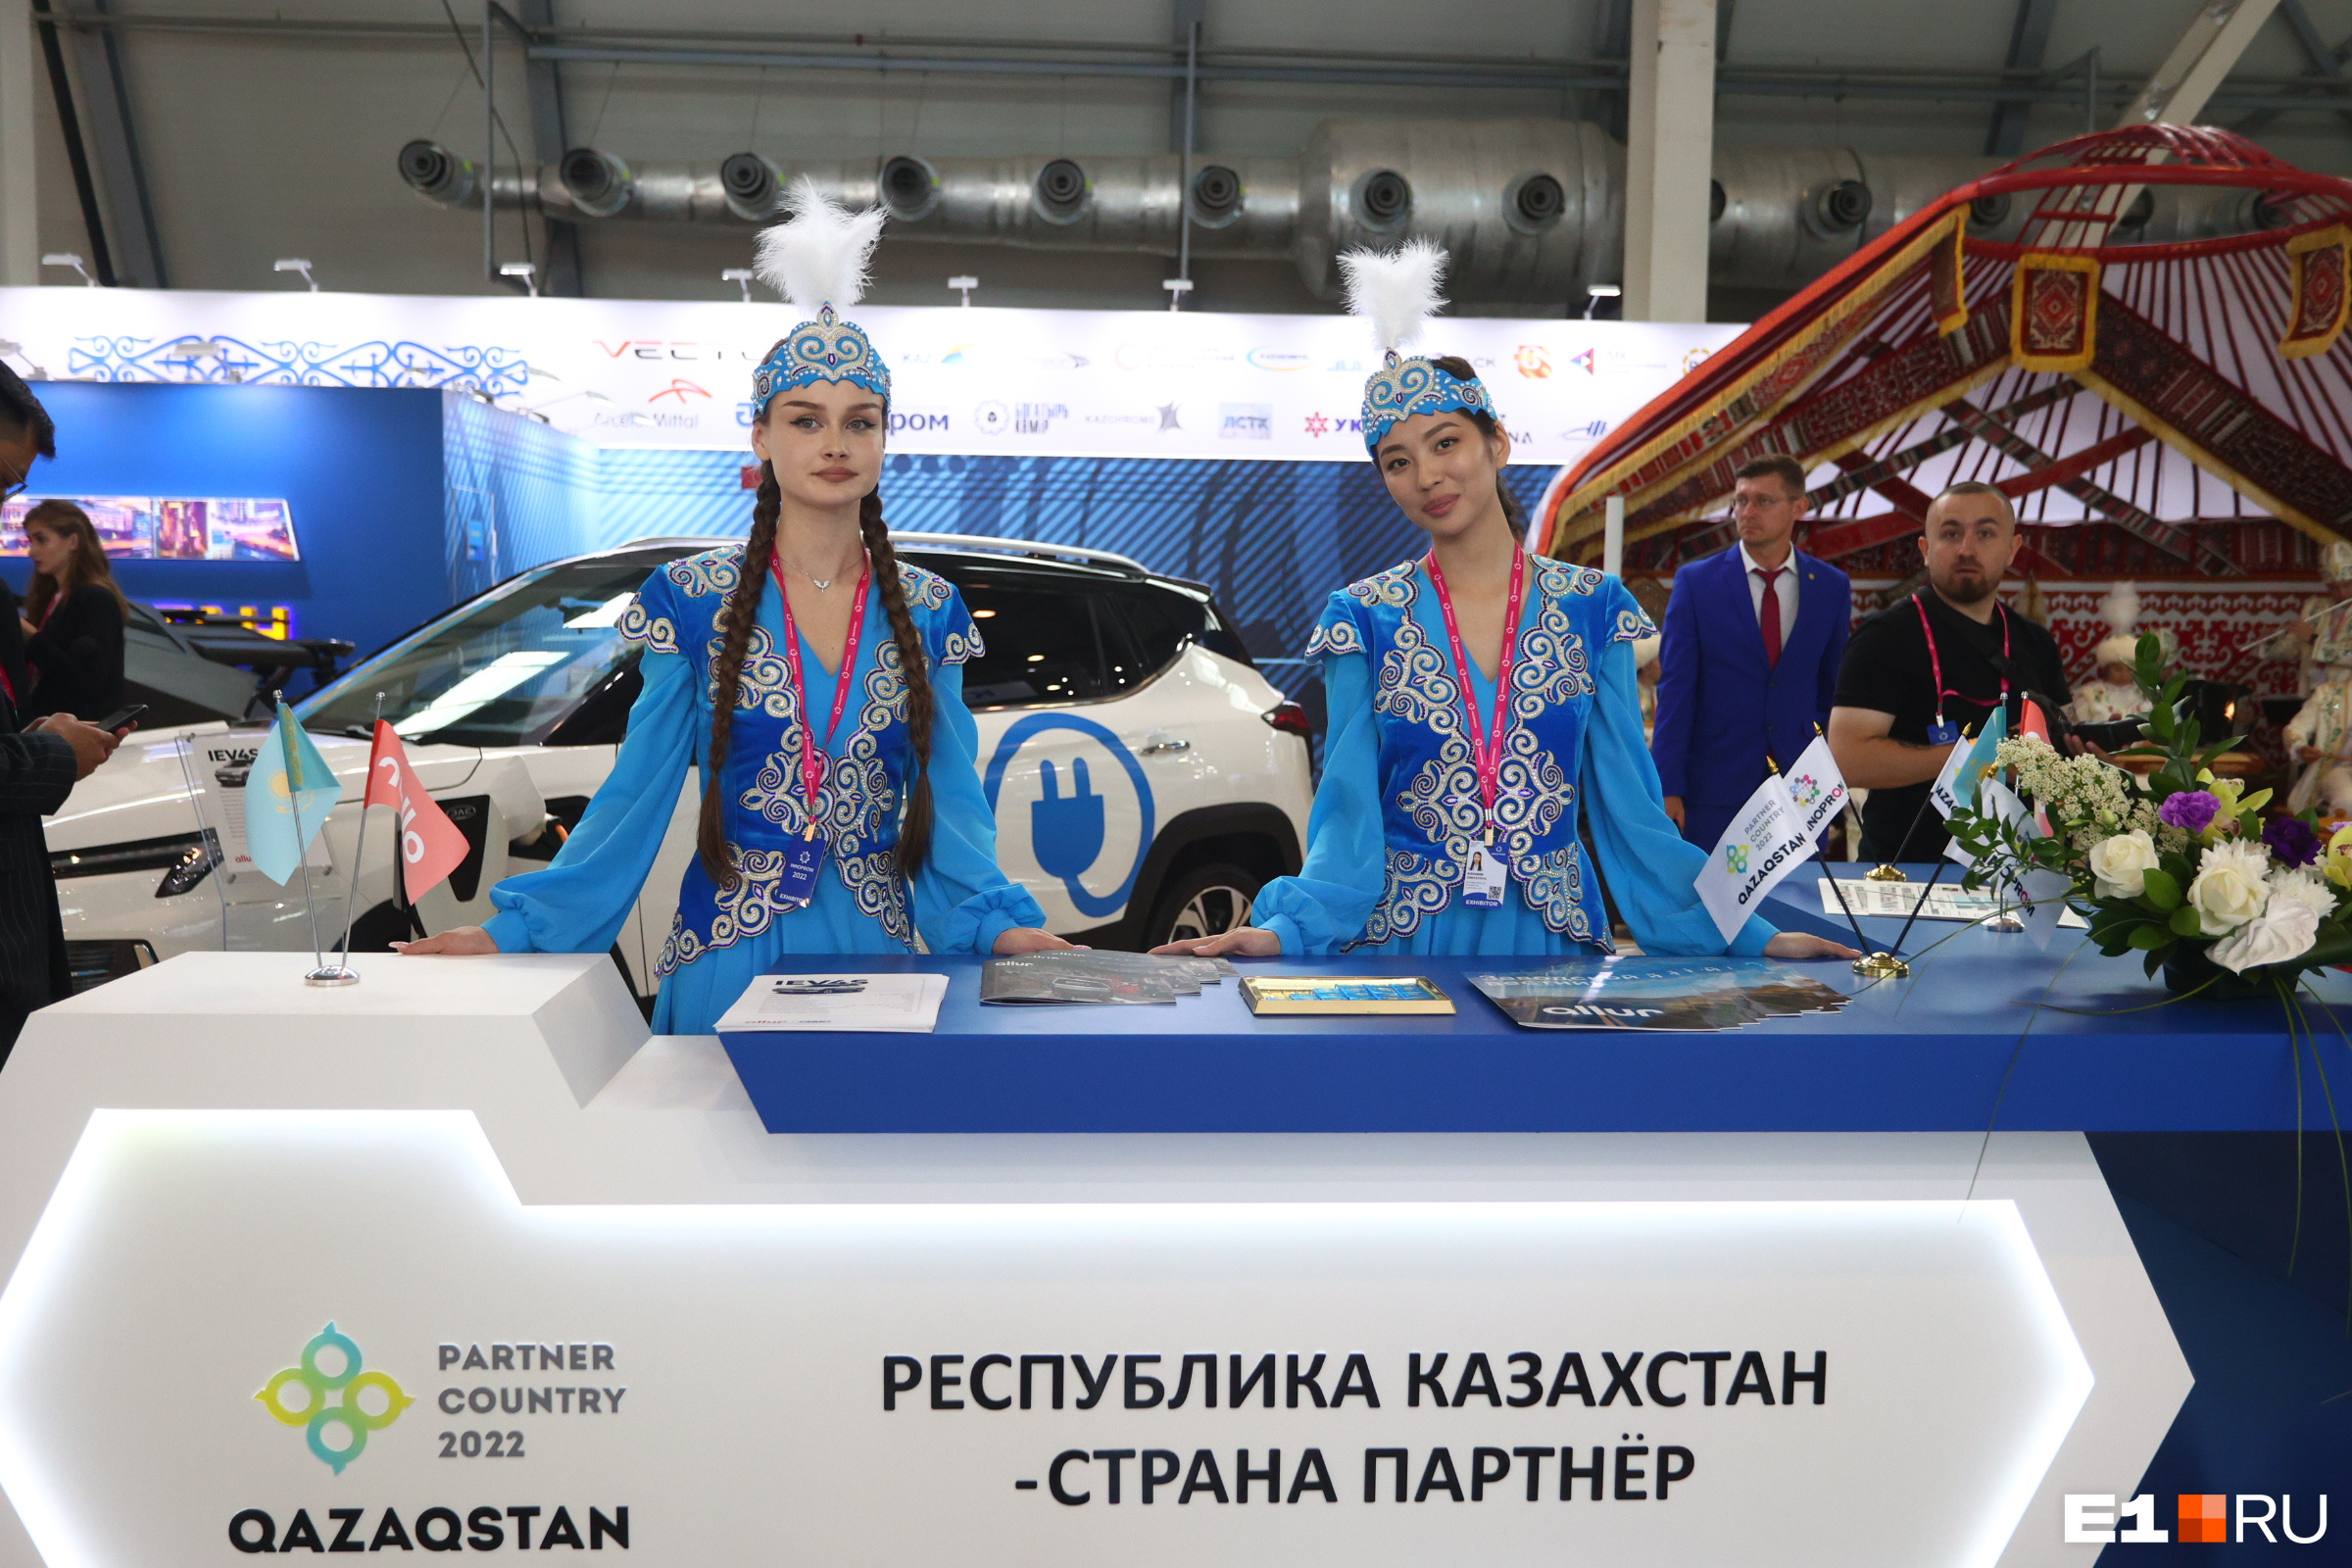 У стенда Казахстана гостей встречали девушки в национальных костюмах